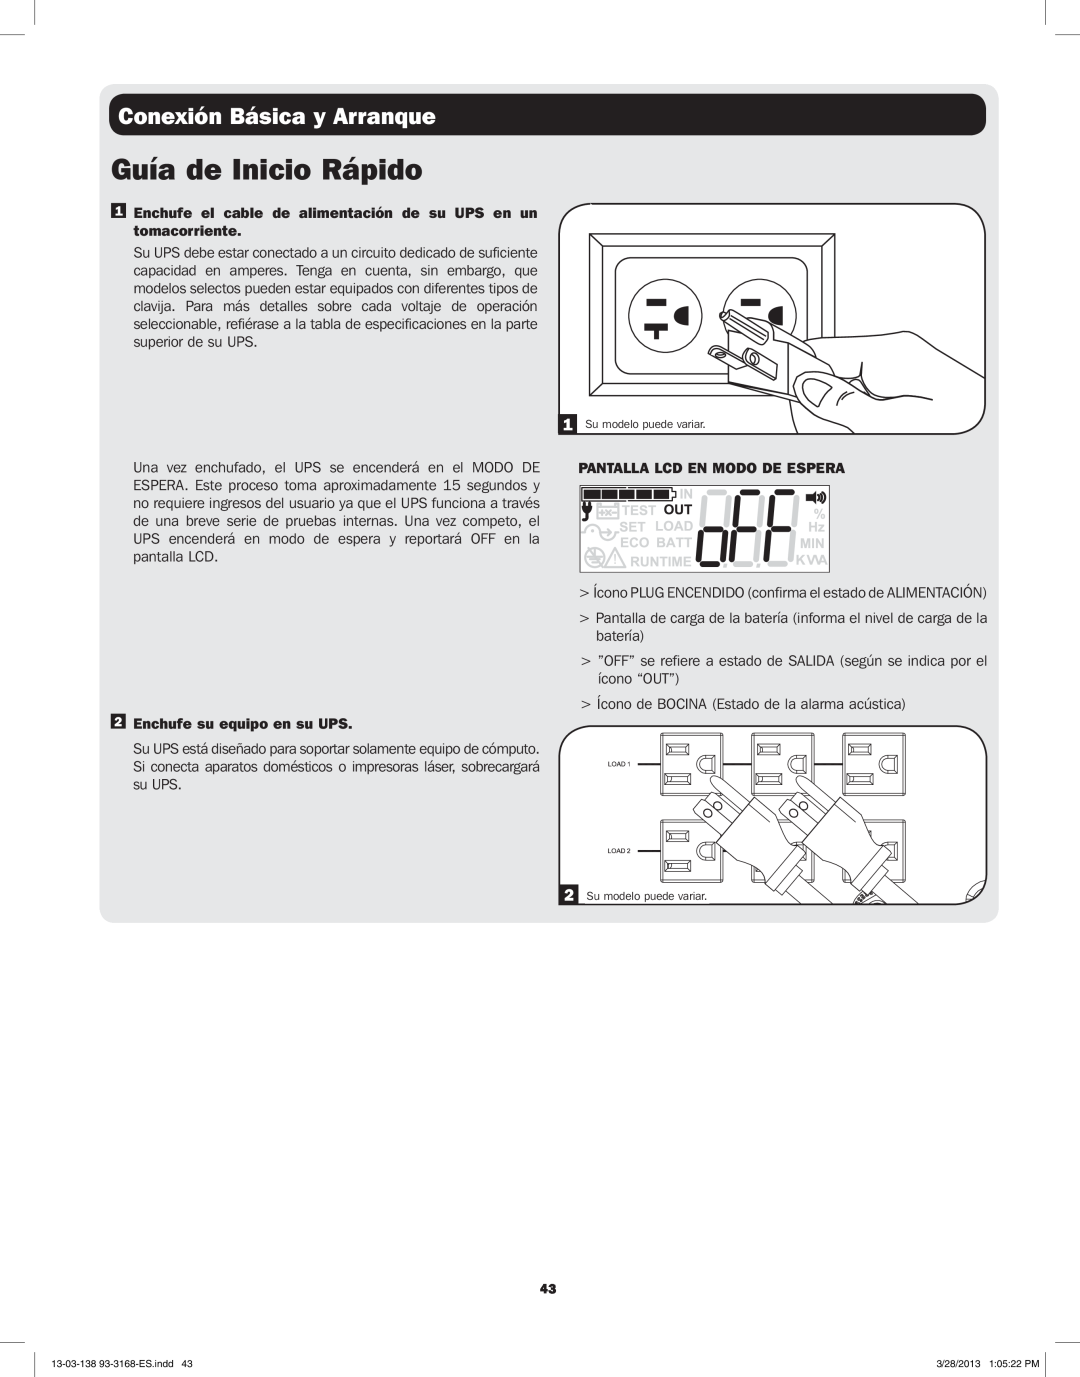 Tripp Lite SU3000XLCD, SU1500XLCD Guía de Inicio Rápido, Conexión Básica y Arranque, Enchufe su equipo en su UPS 